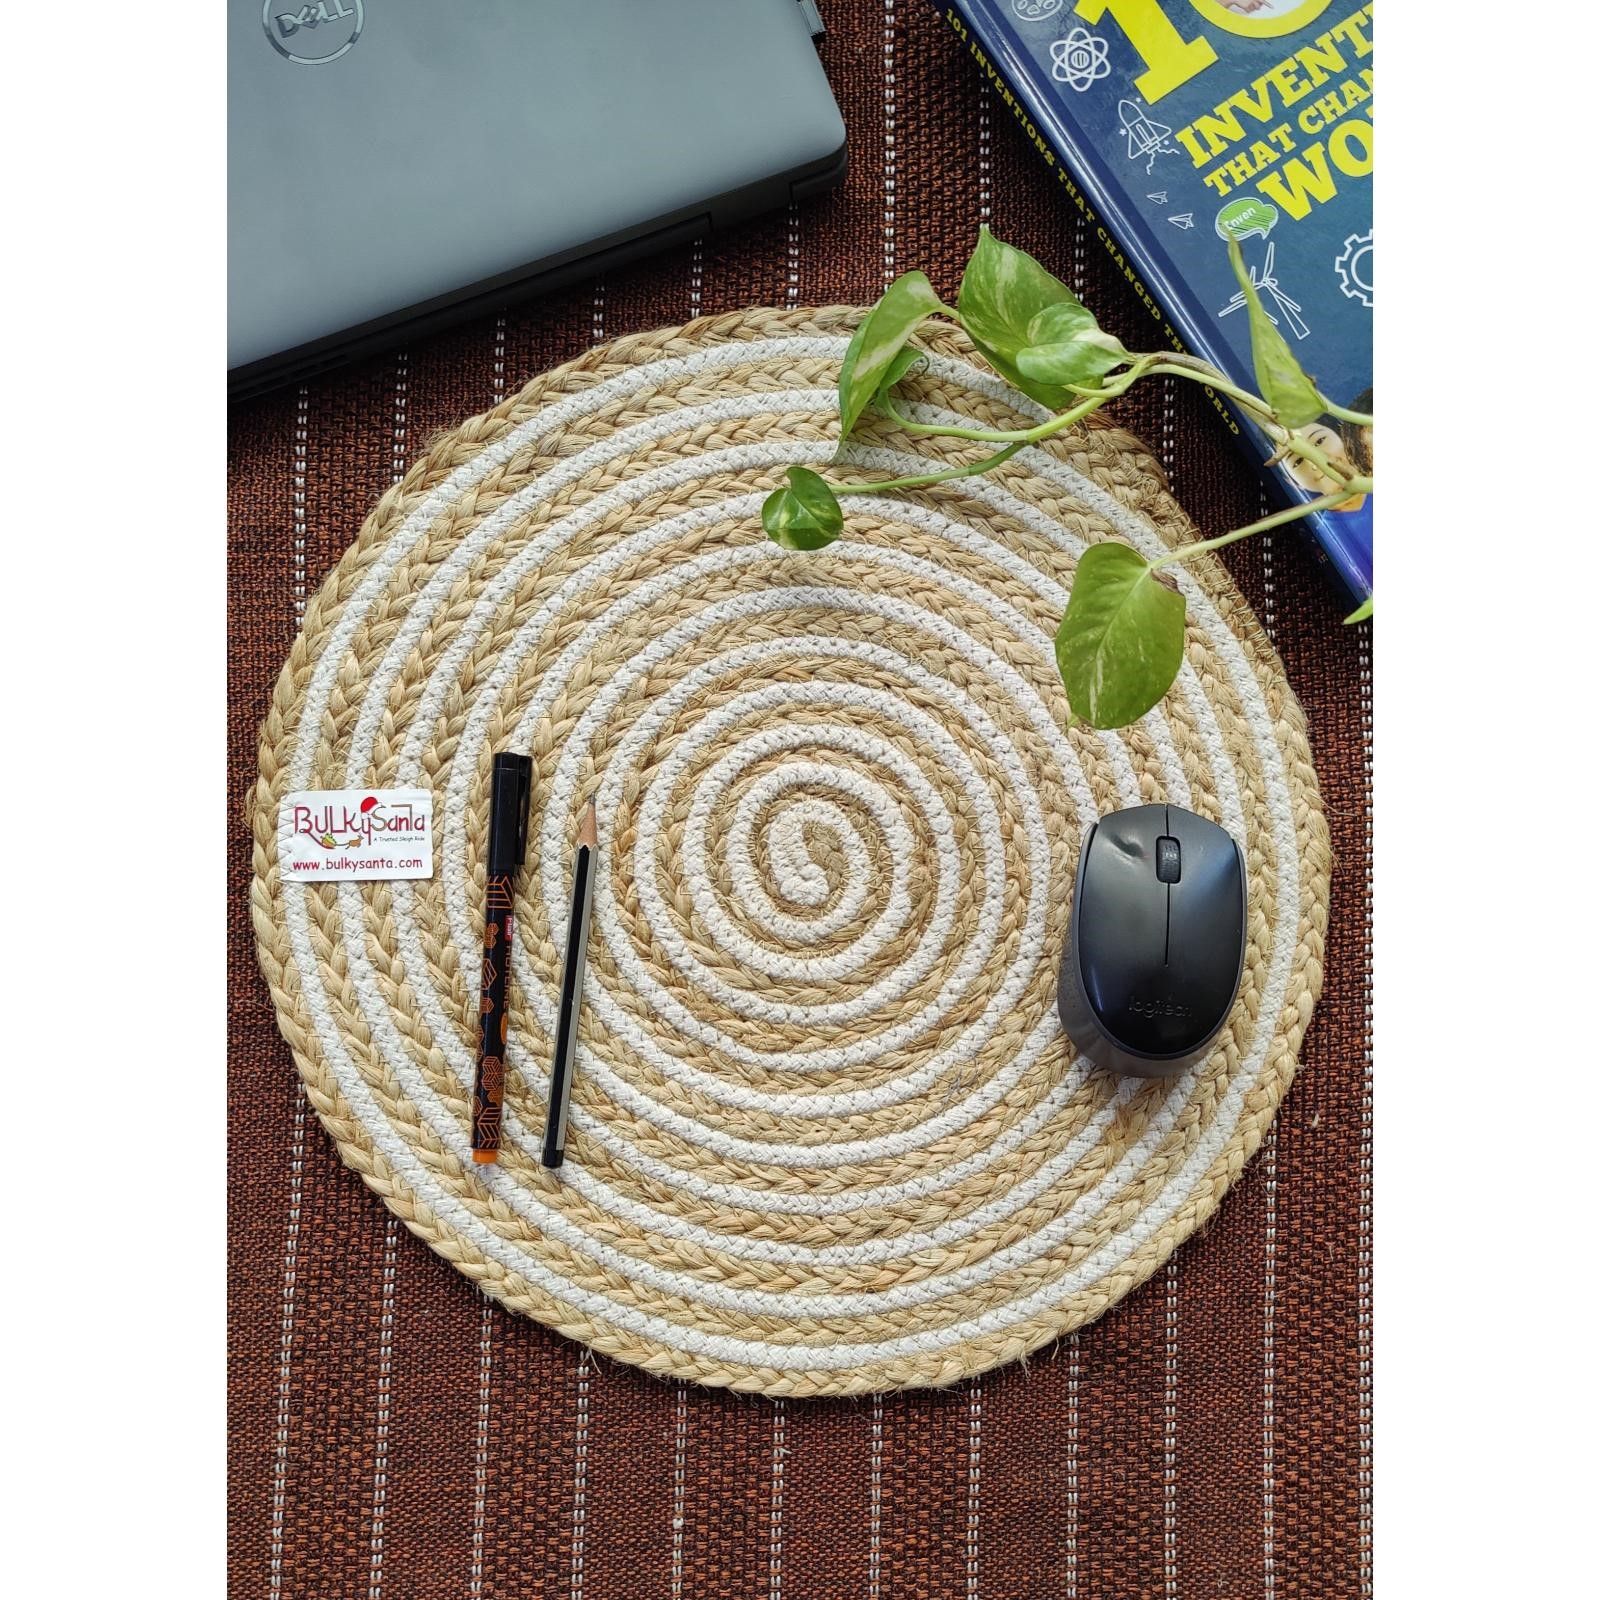 Bulkysanta Cotton Placement mats| Heat-Resistant | Handicraft | Reversible | Washable | Size - 38 cm / 15" (Cotton&Jute) (Pack of 3)